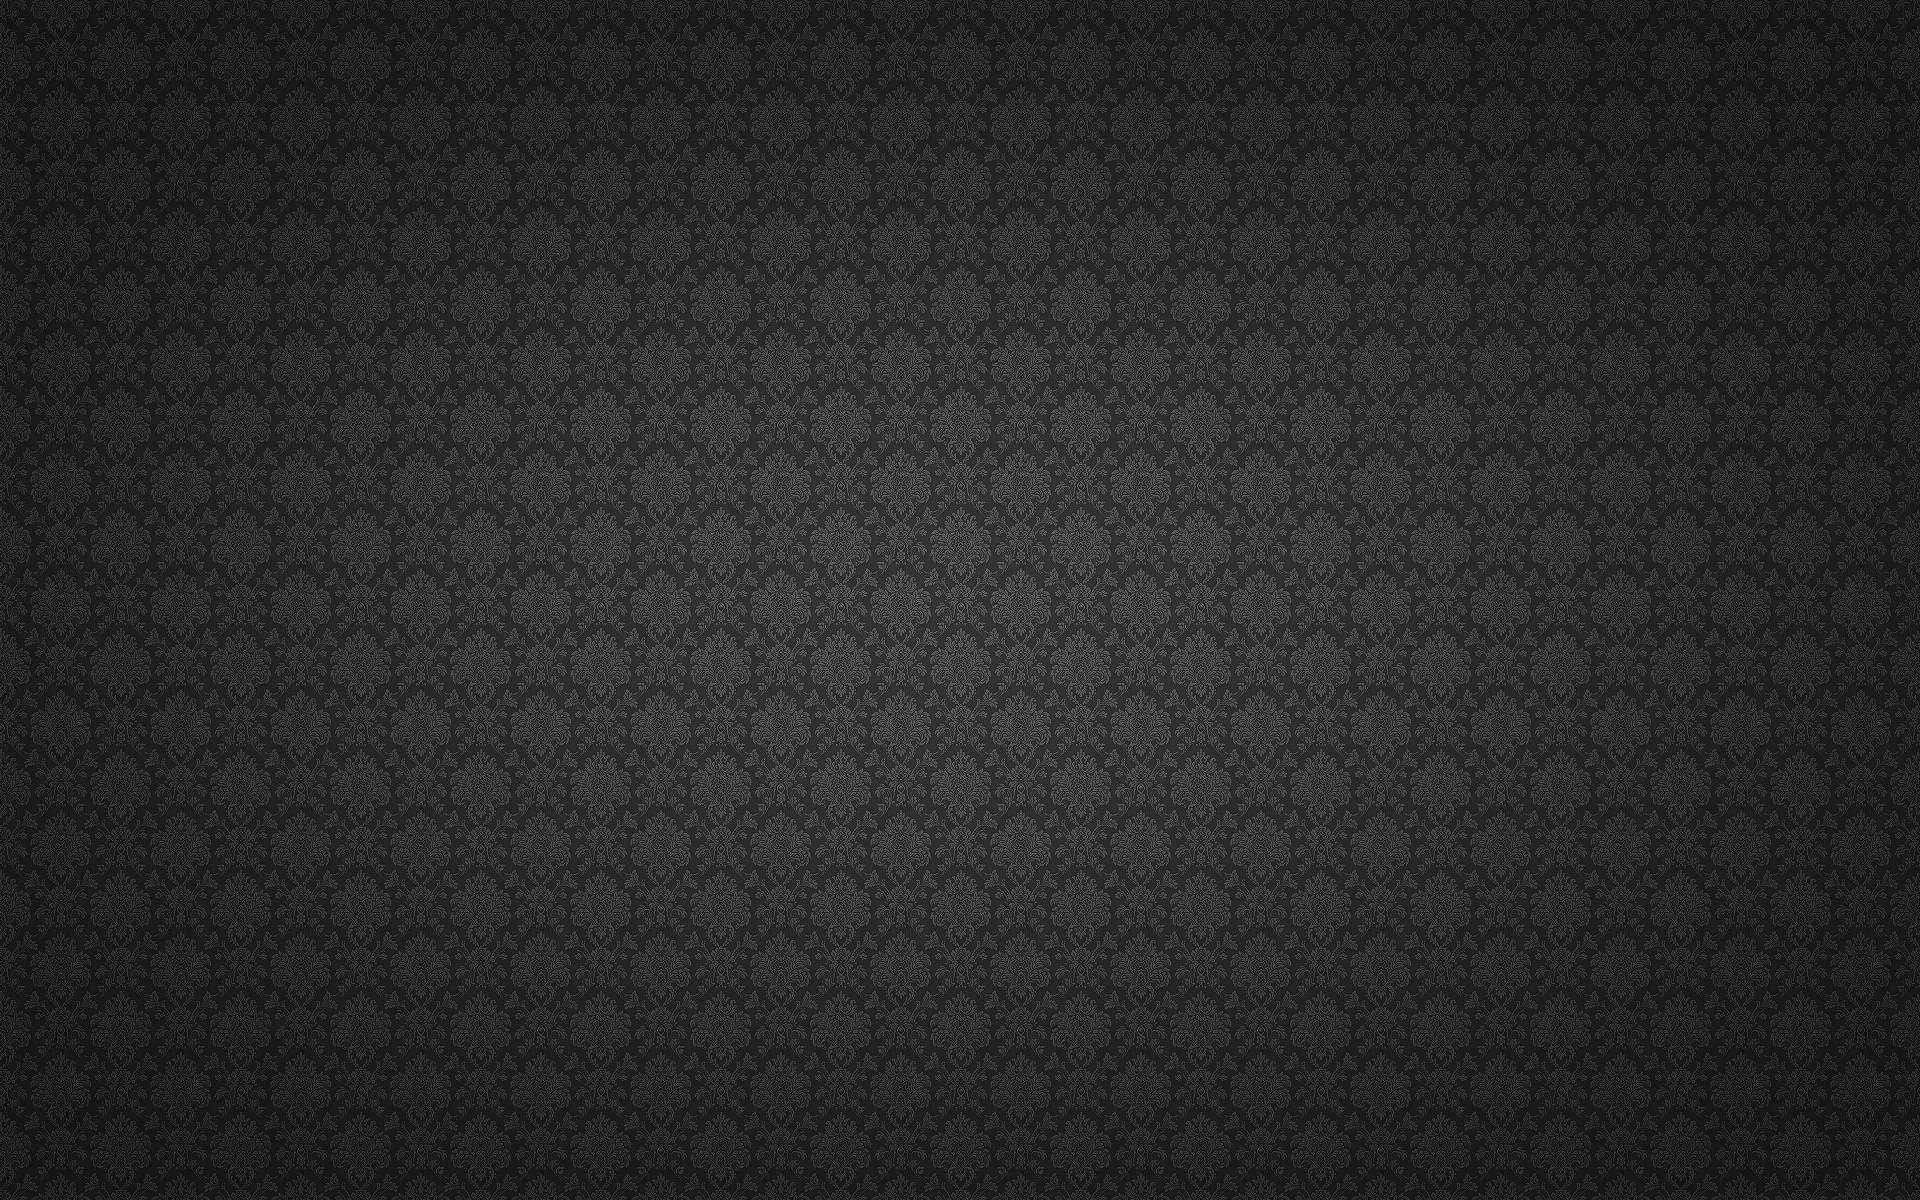 Black Dark Widescreen HD Wallpaper For Ubuntu 1920×1200 Set